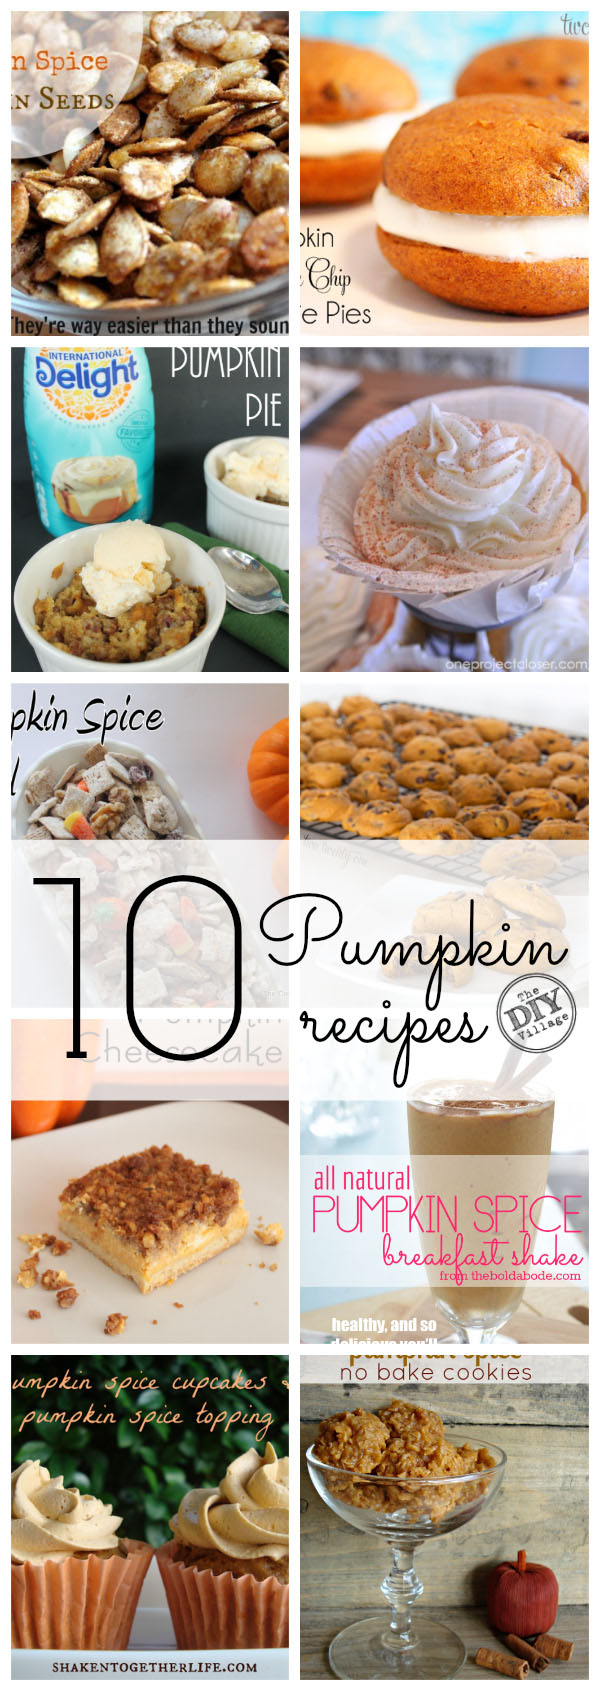 10-pumpkin-recipes